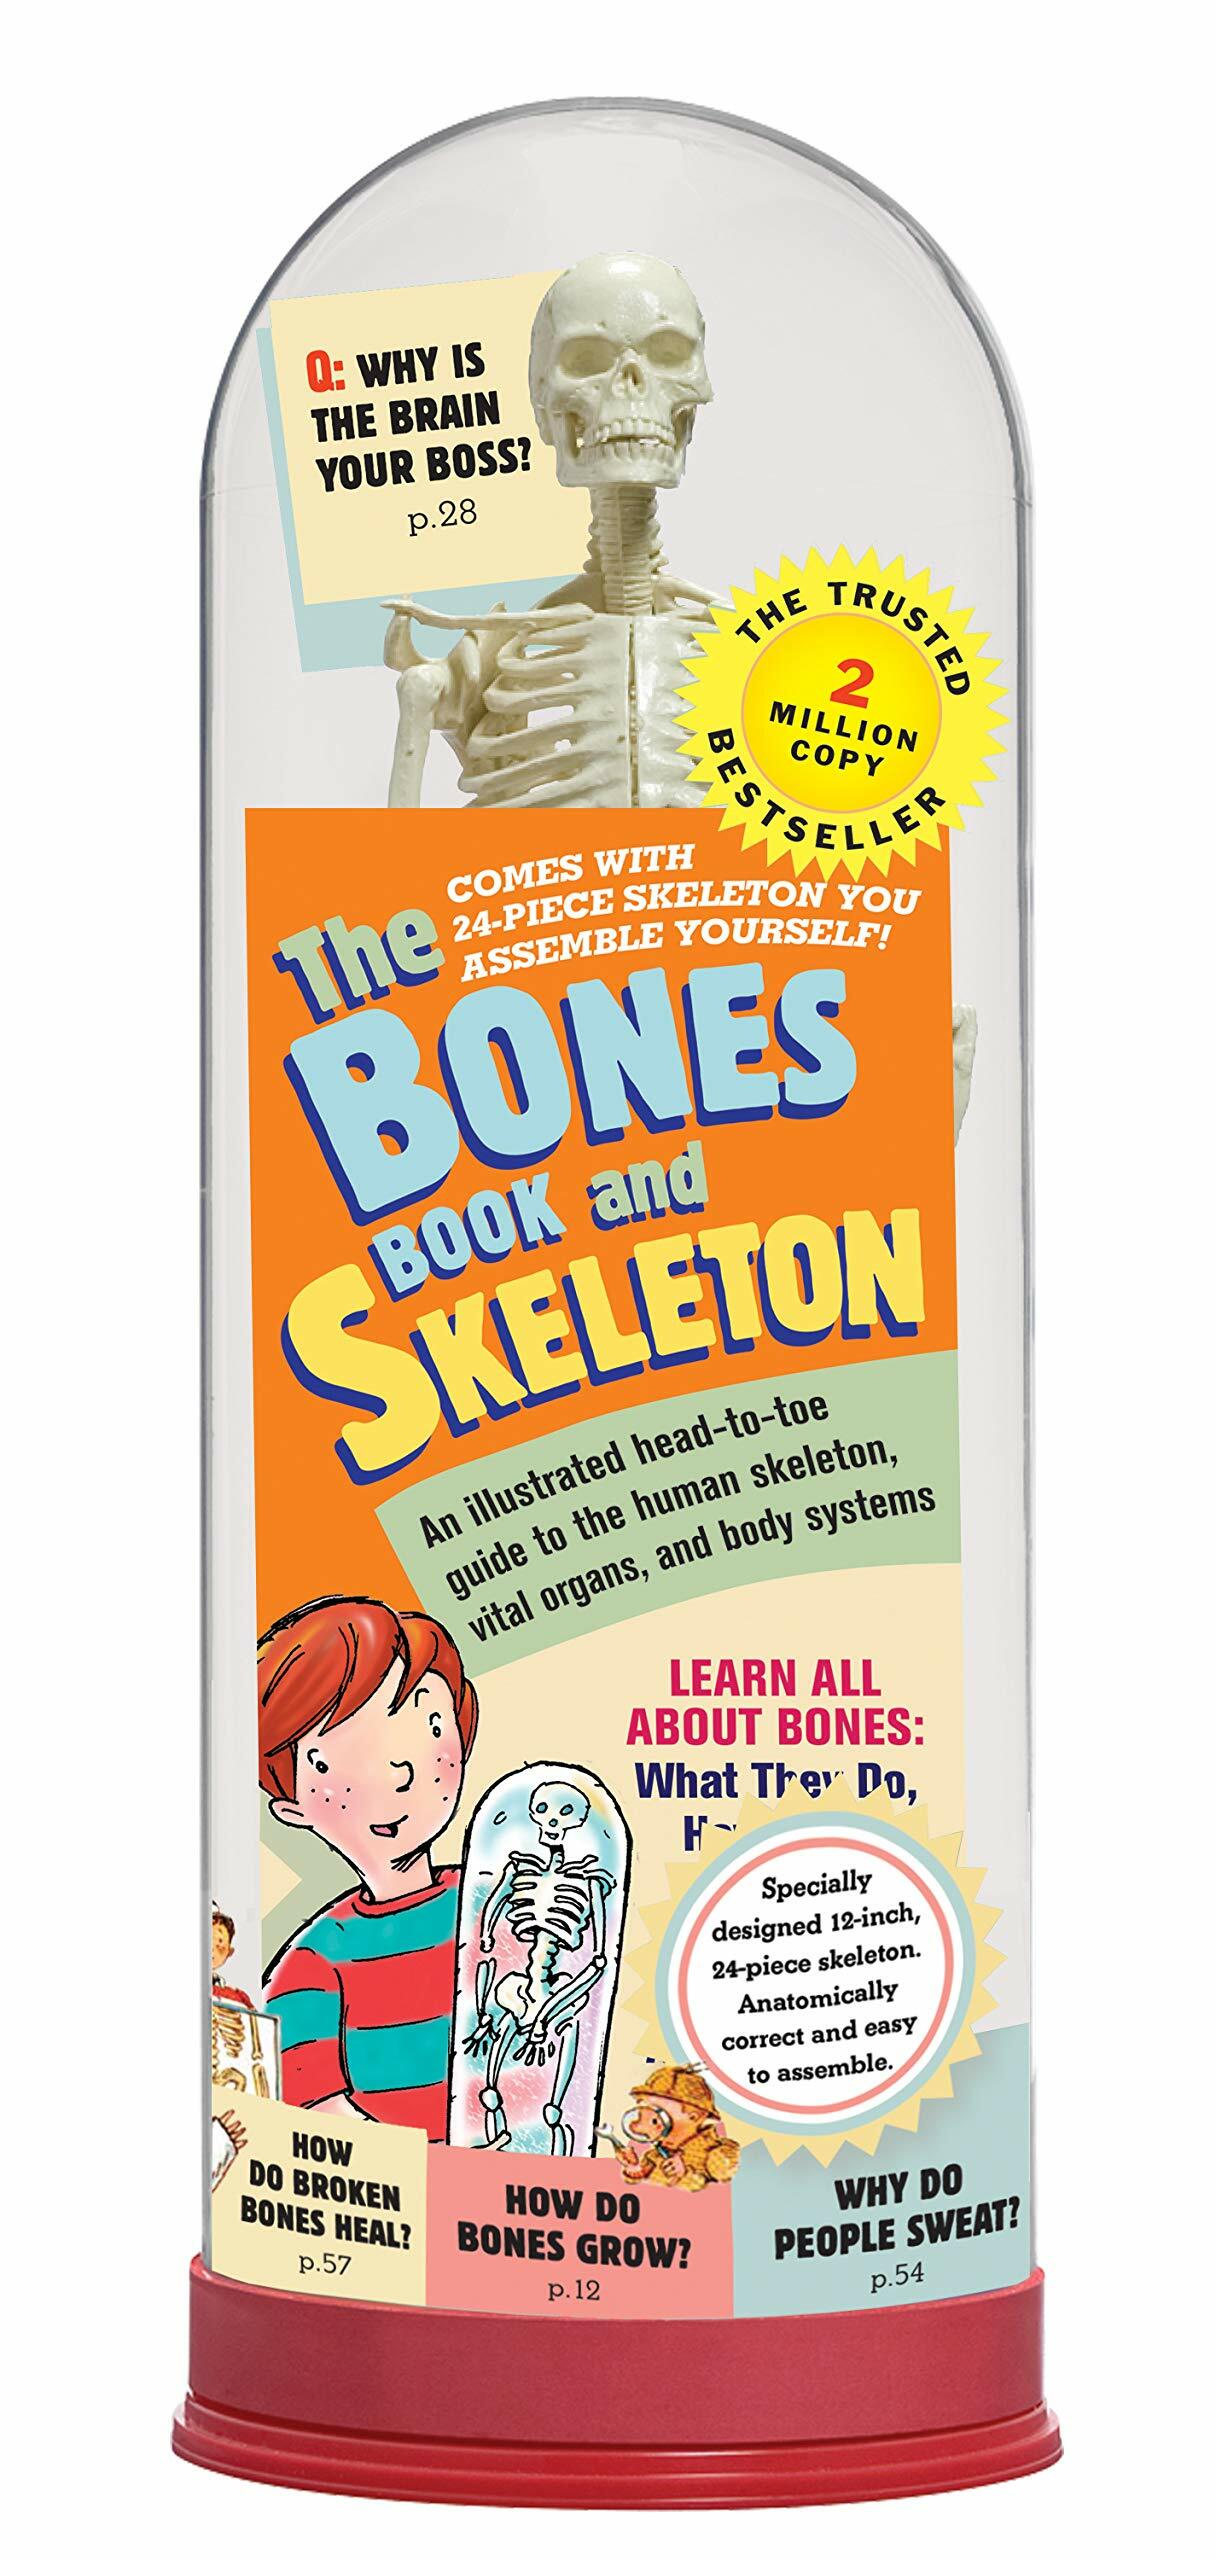 [중고] The Bones Book and Skeleton